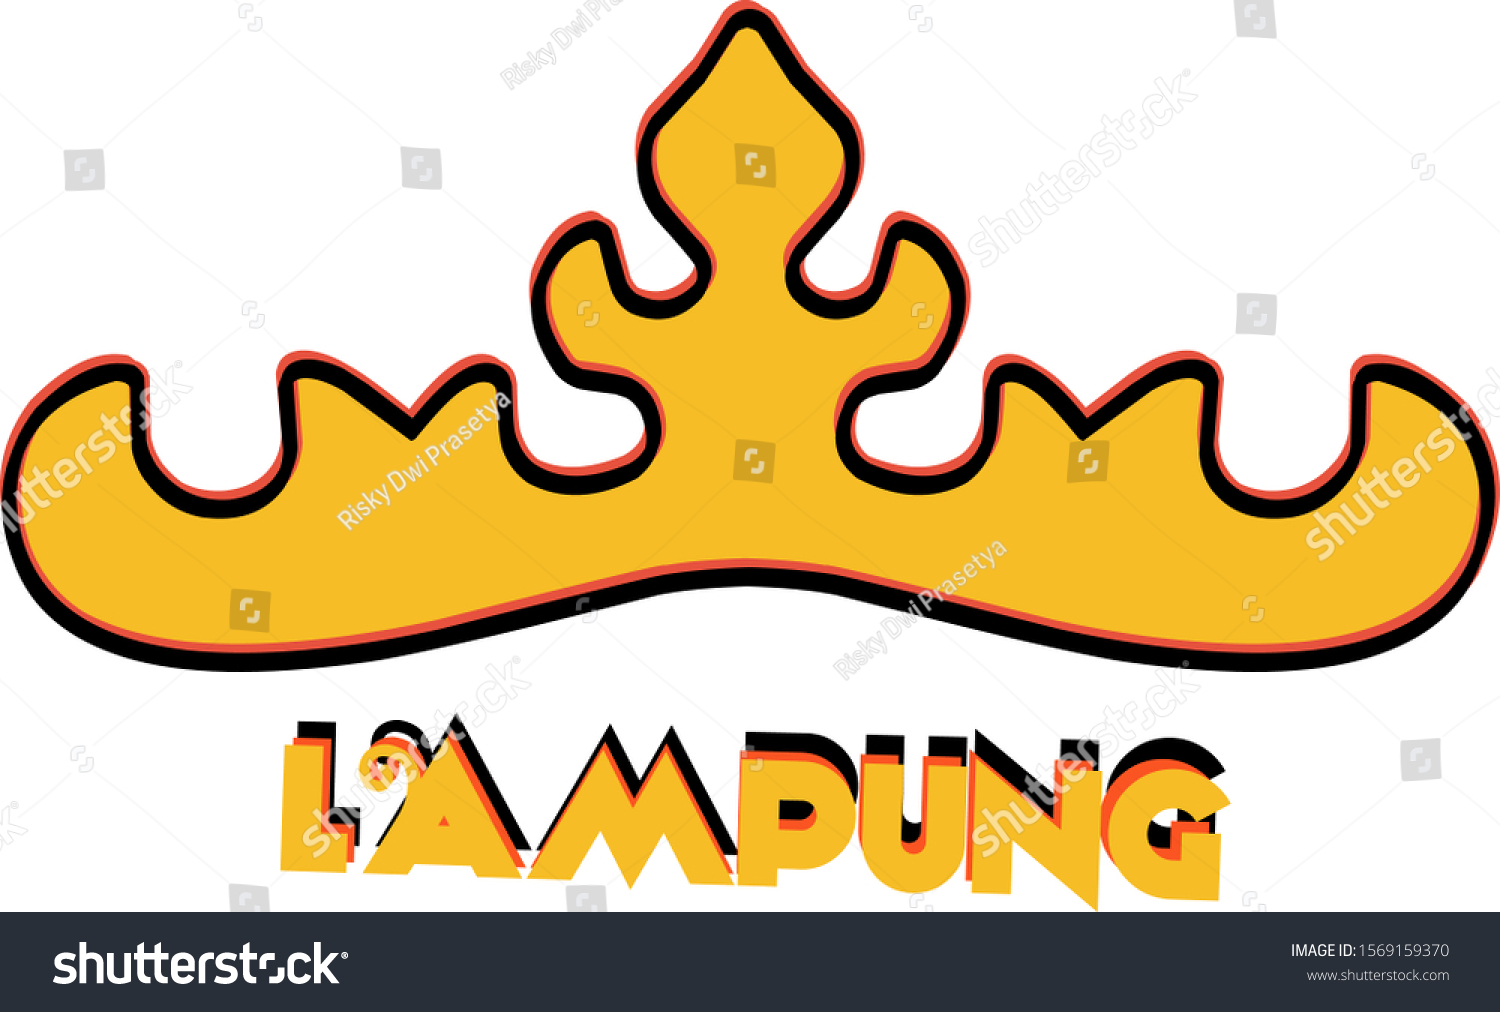 Logo Siger Siger Lampung - KibrisPDR